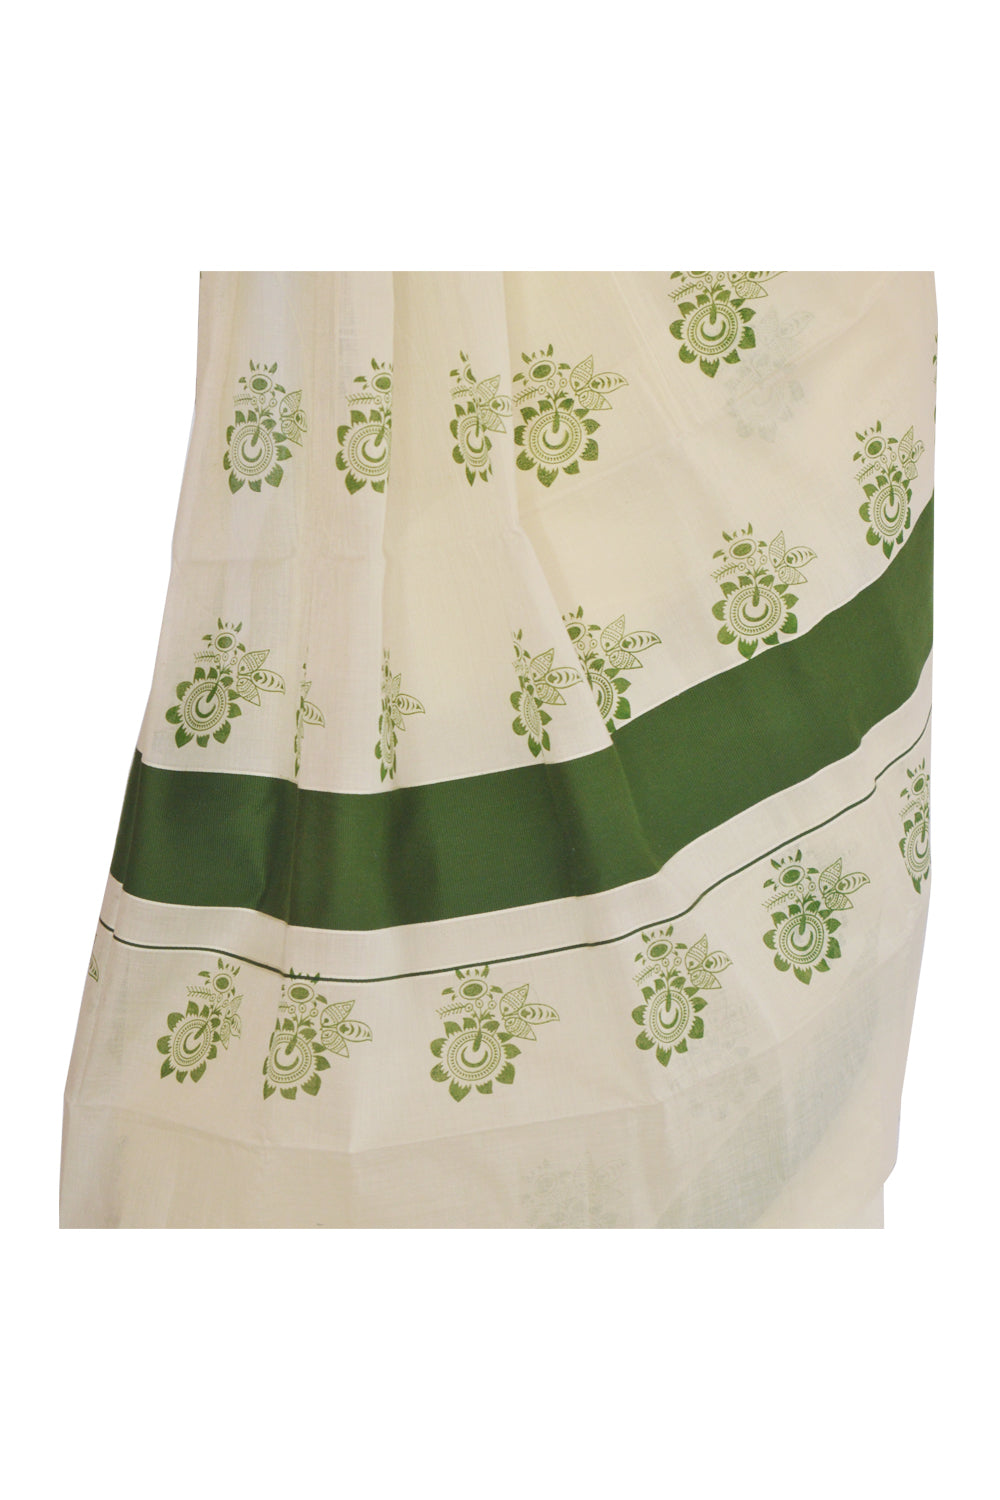 Kerala Saree with Green Floral Block Print